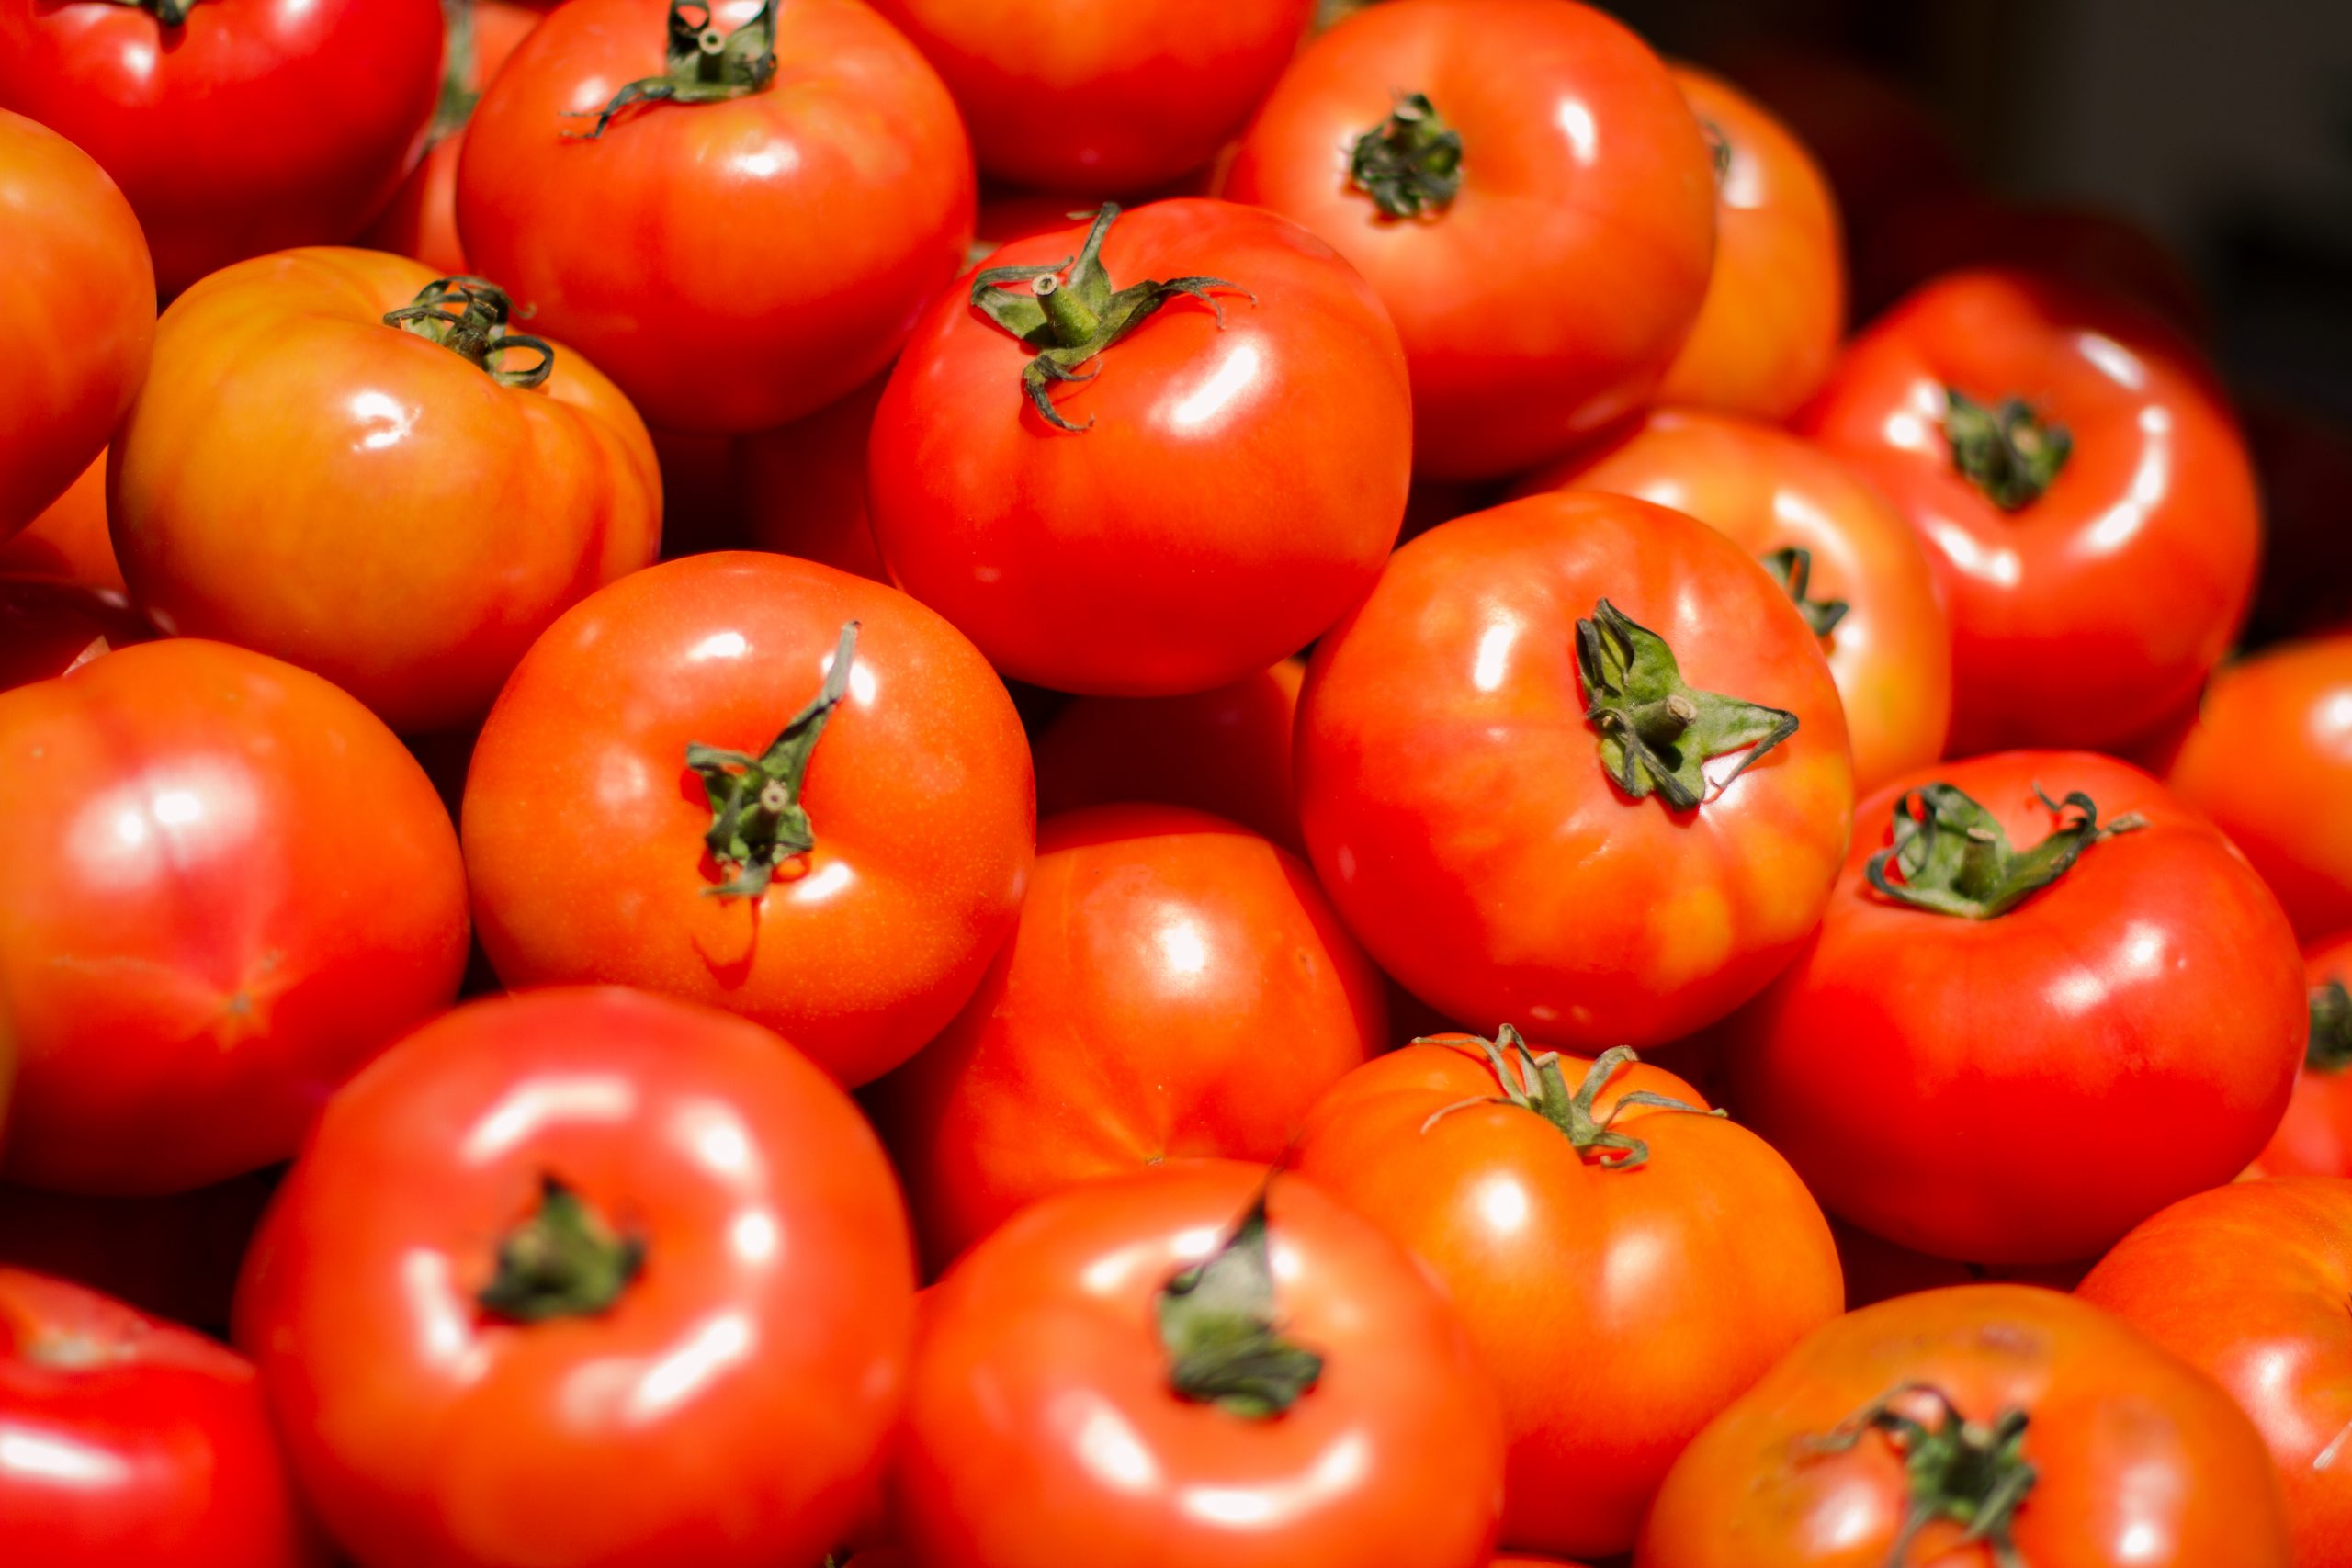 Abonos órgano minerales Inprog específicos para el cultivo de tomate